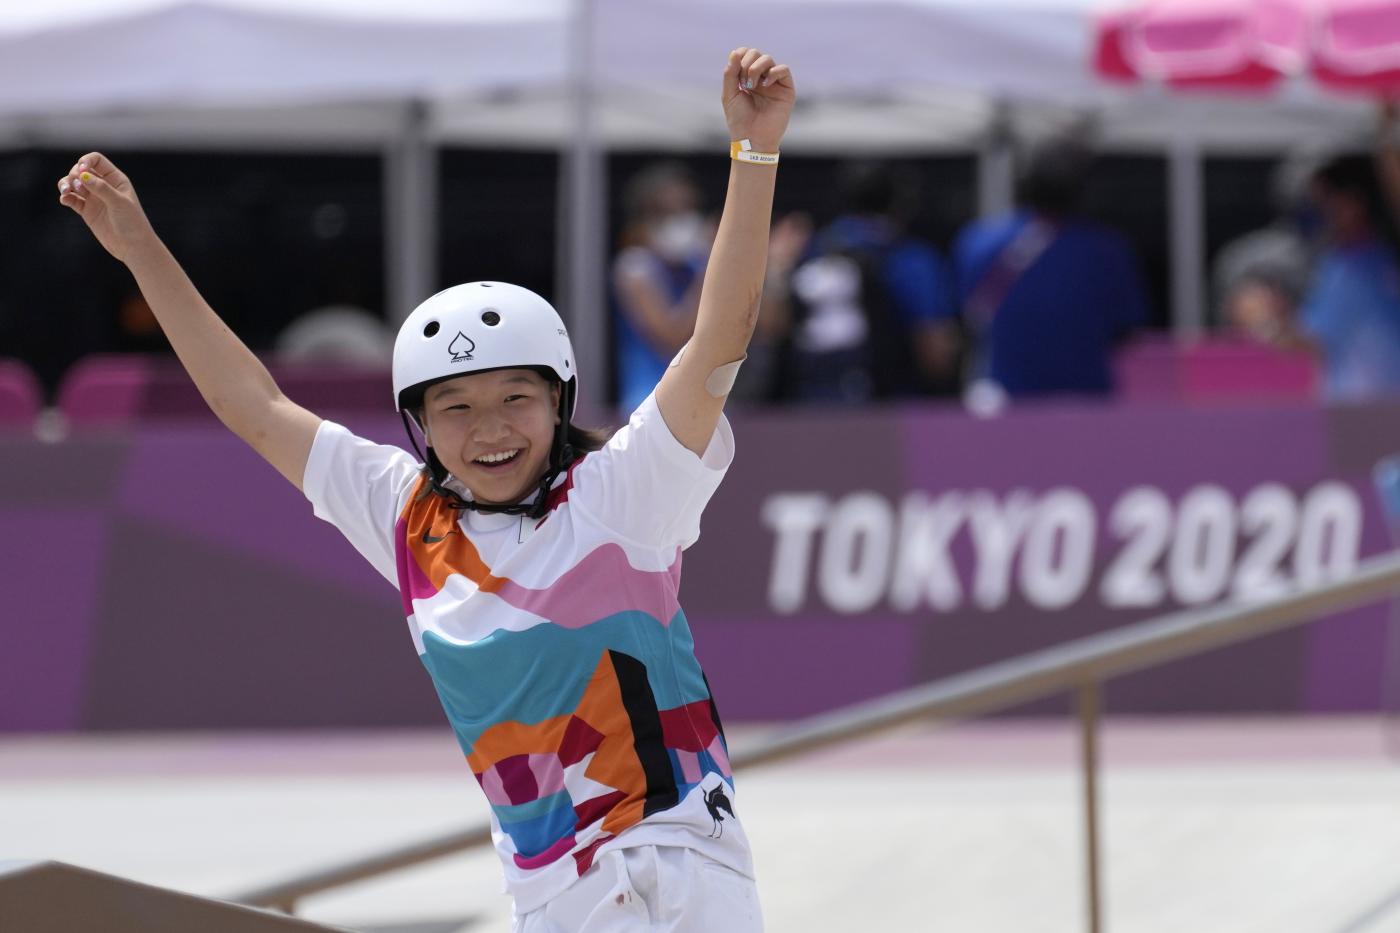 Tokyo 2020, oro a 13 anni per Momiji Nishiya nello skateboard